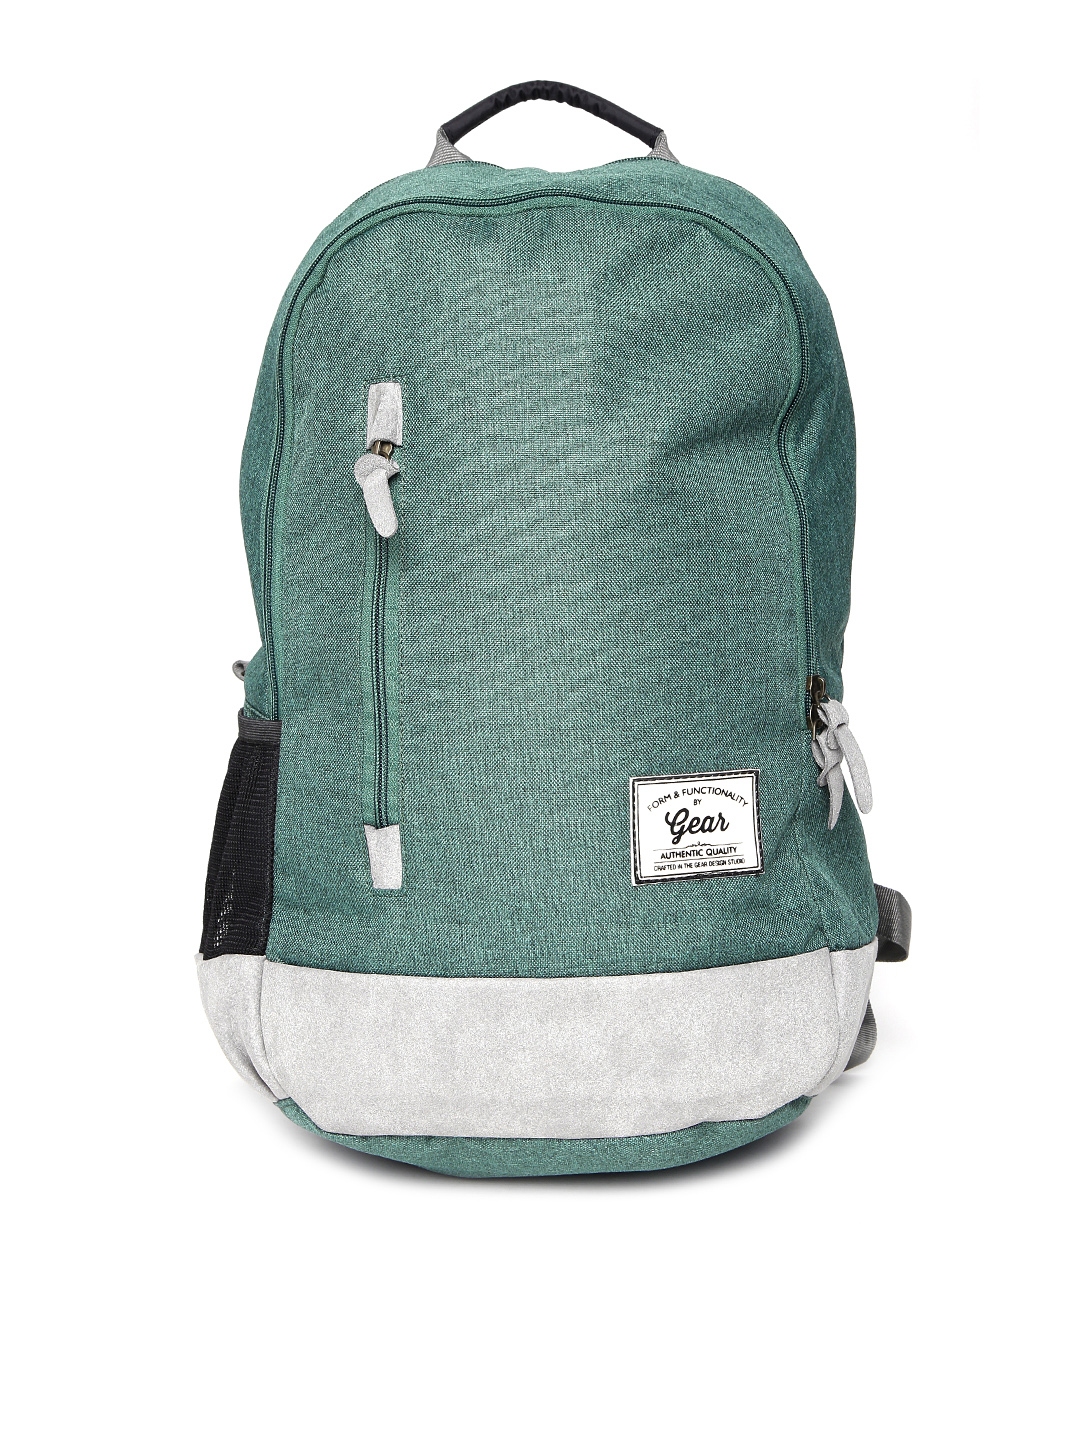 Gear Unisex Teal Green Campus 8 Waterproof Backpack